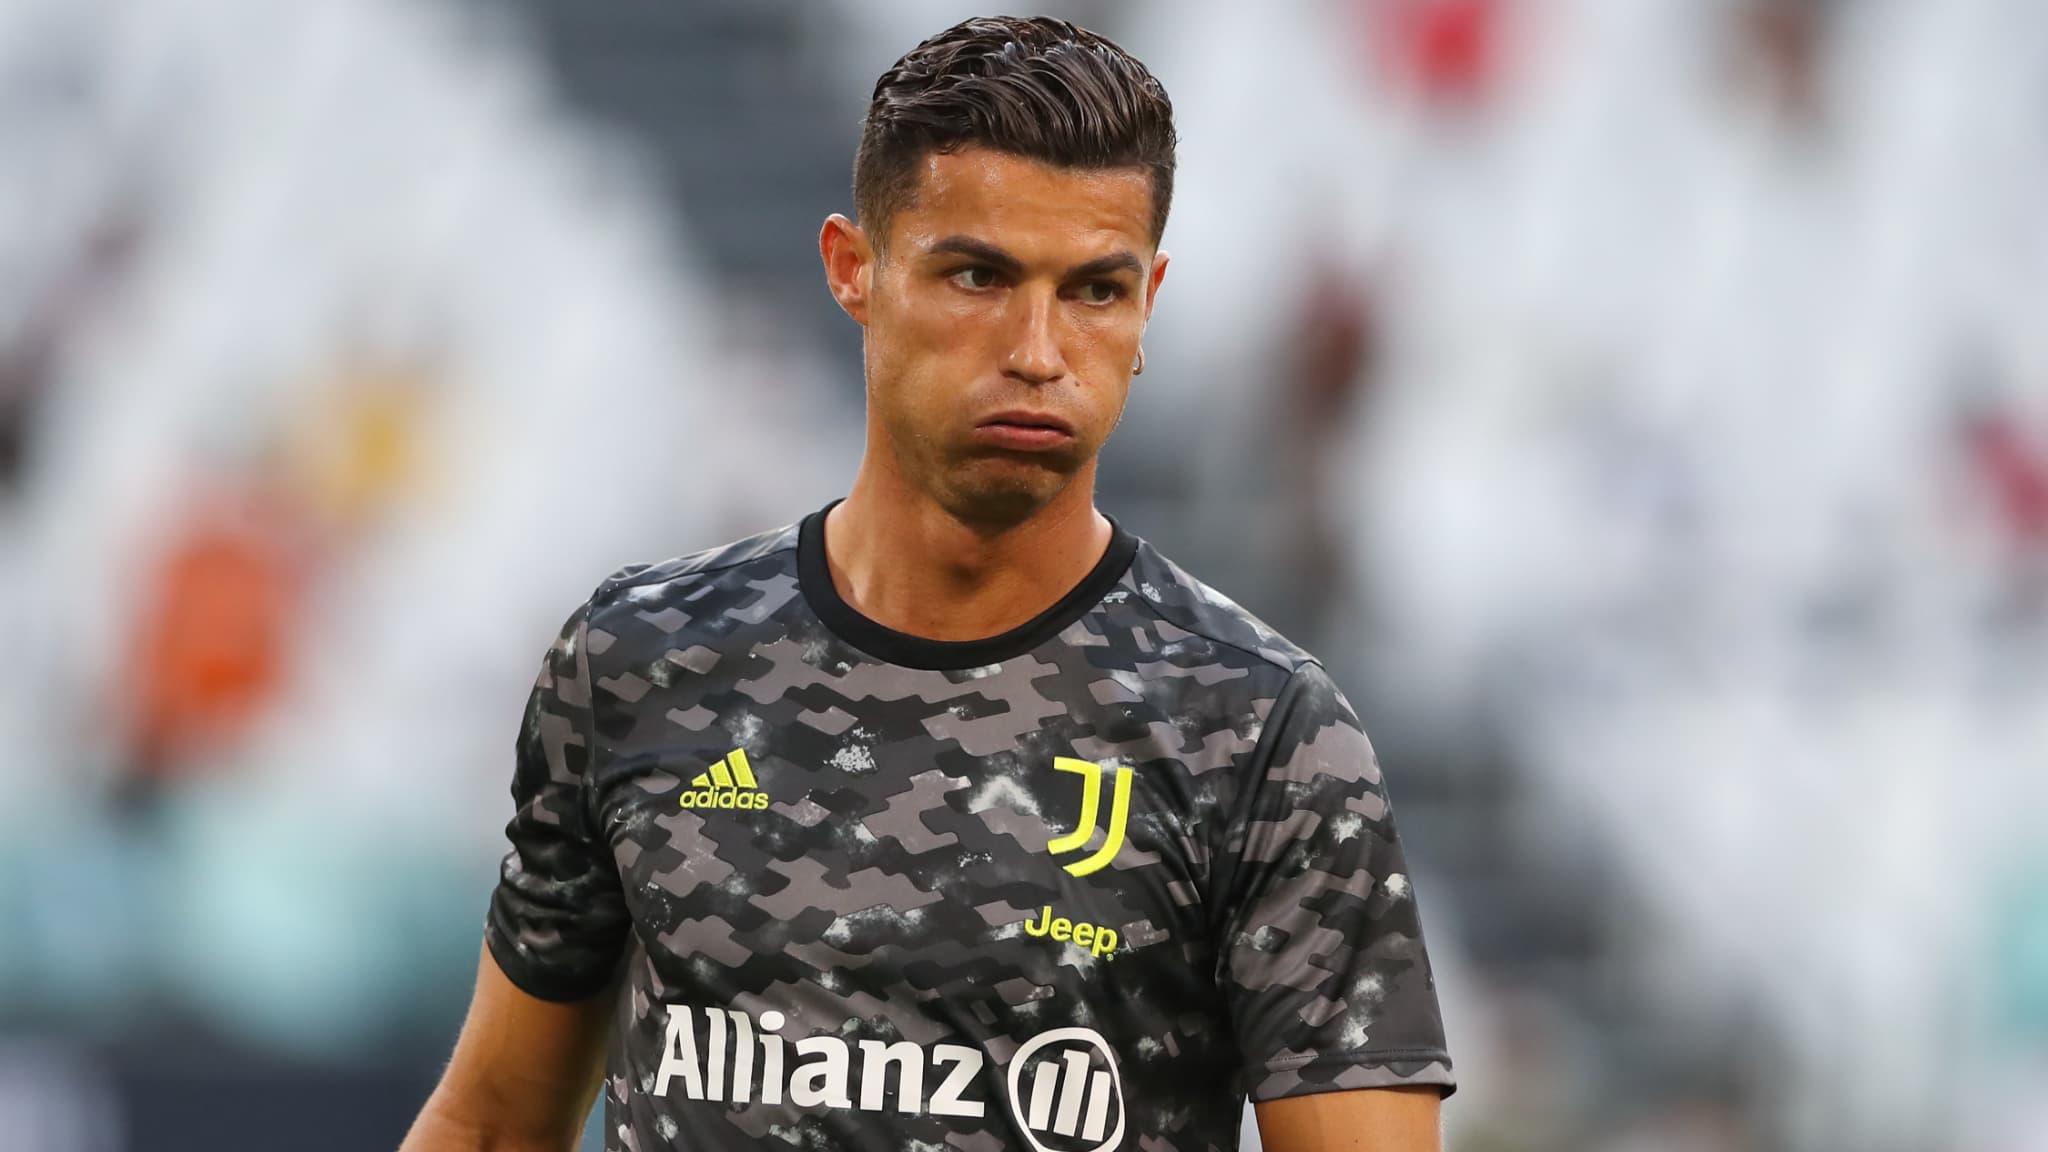 Man City n’est pas parvenu à trouver un accord sur les termes personnels avec Ronaldo